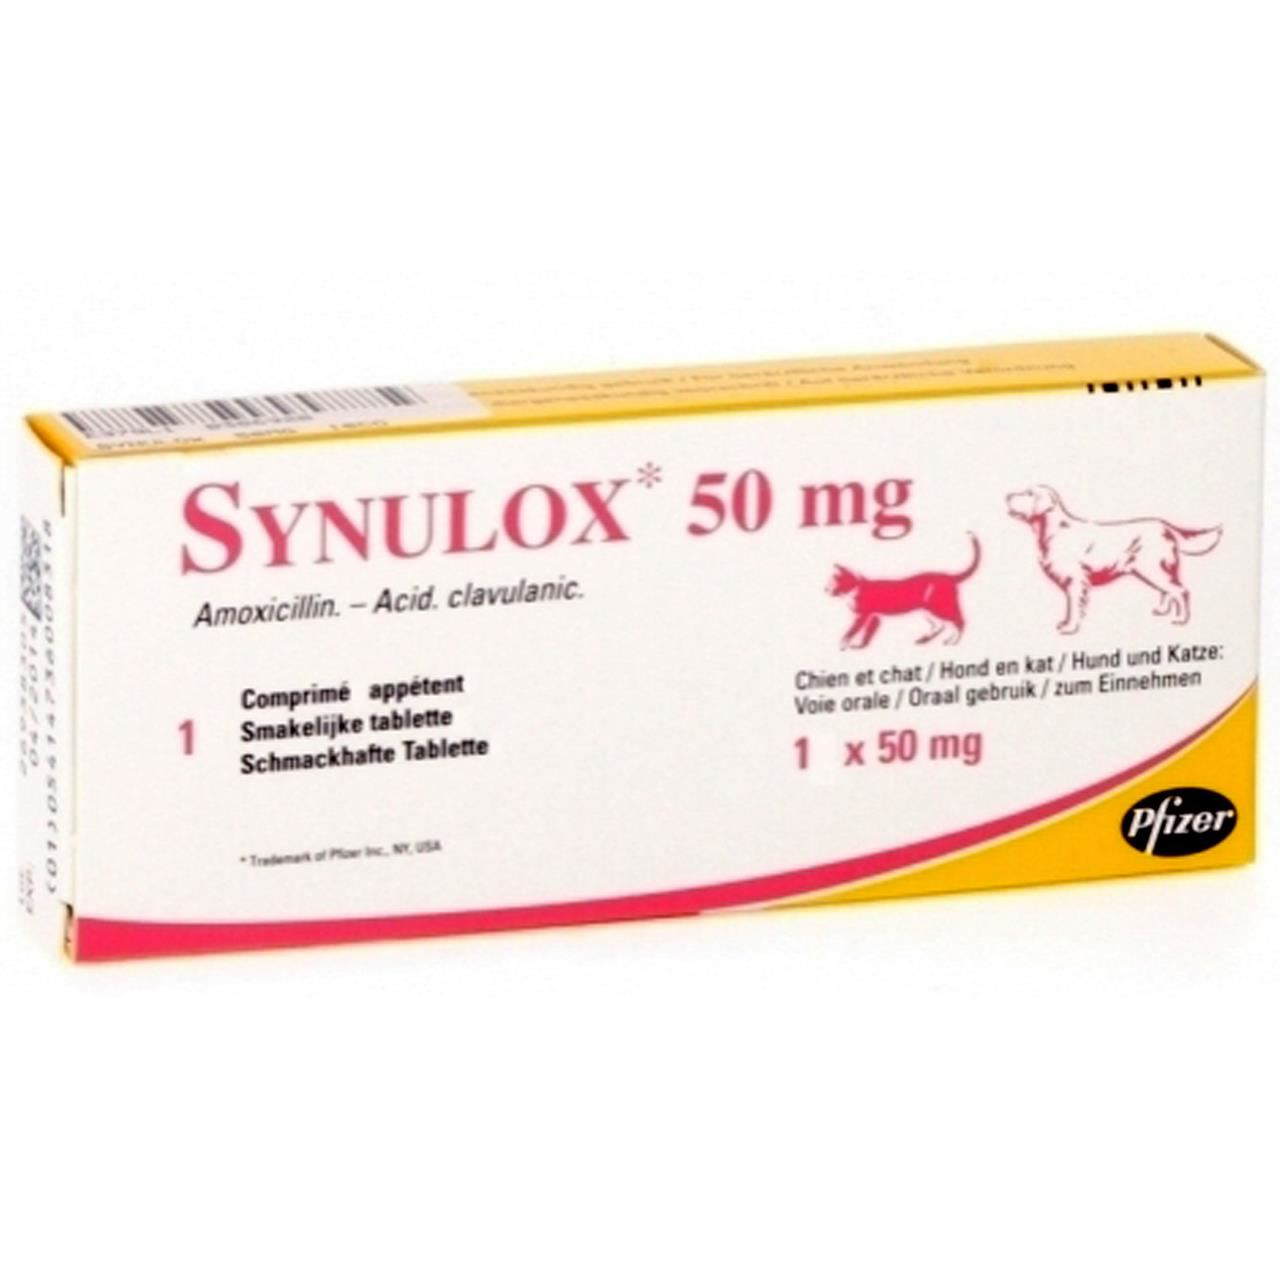 Синулокс 500 мг купить. Синулокс мг. Синулокс 150 мг. Синулокс 500. Синулокс 50.